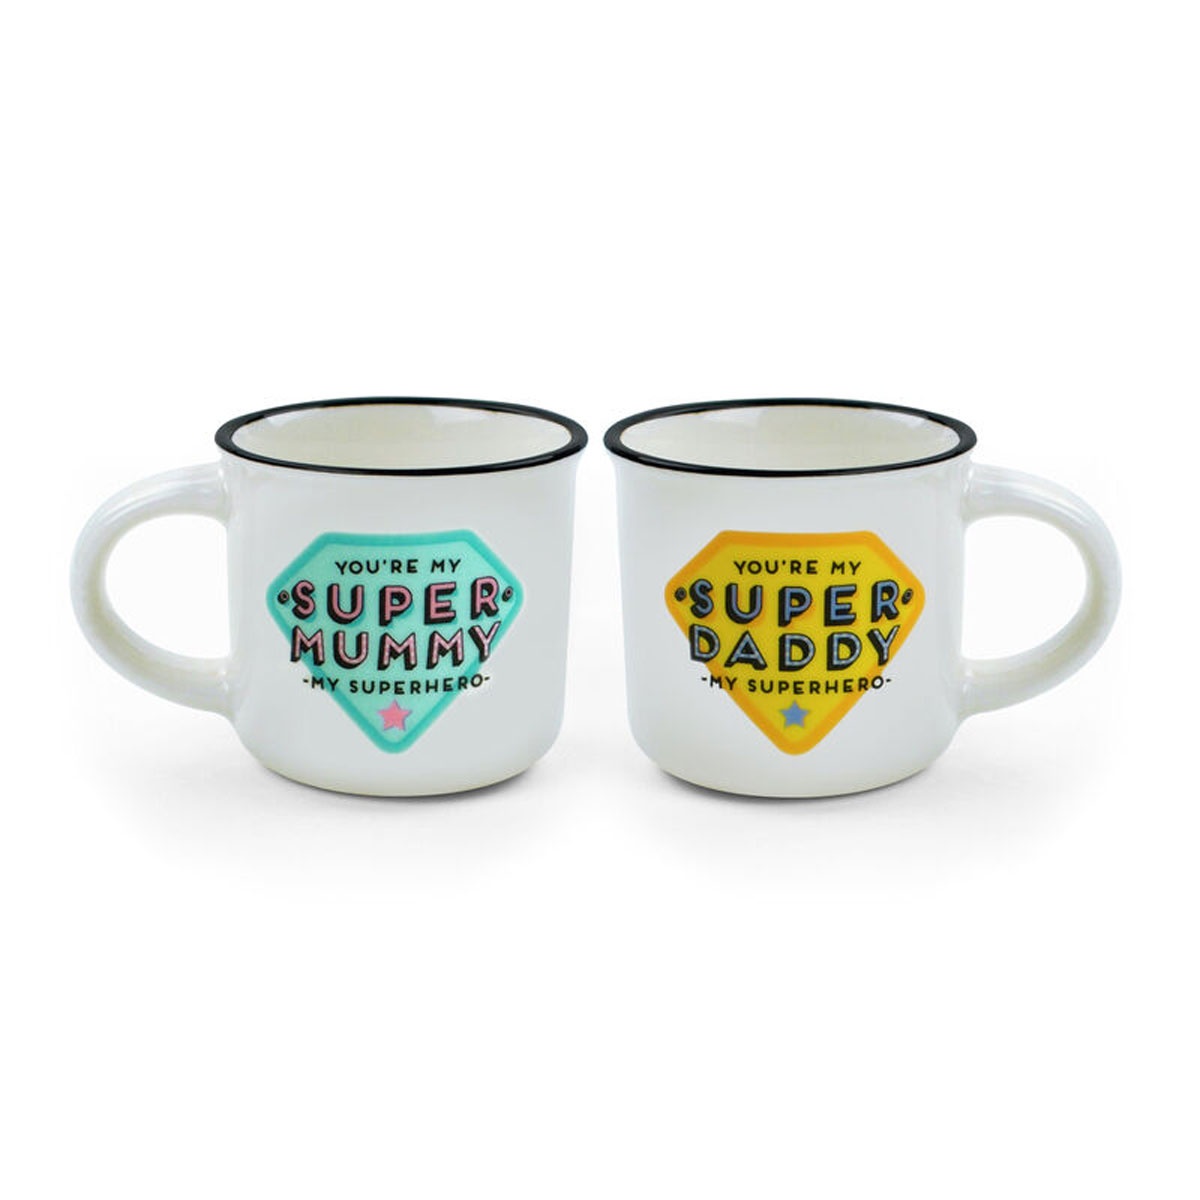 2 Espressotassen - Super Mummy & Super Daddy von Legami